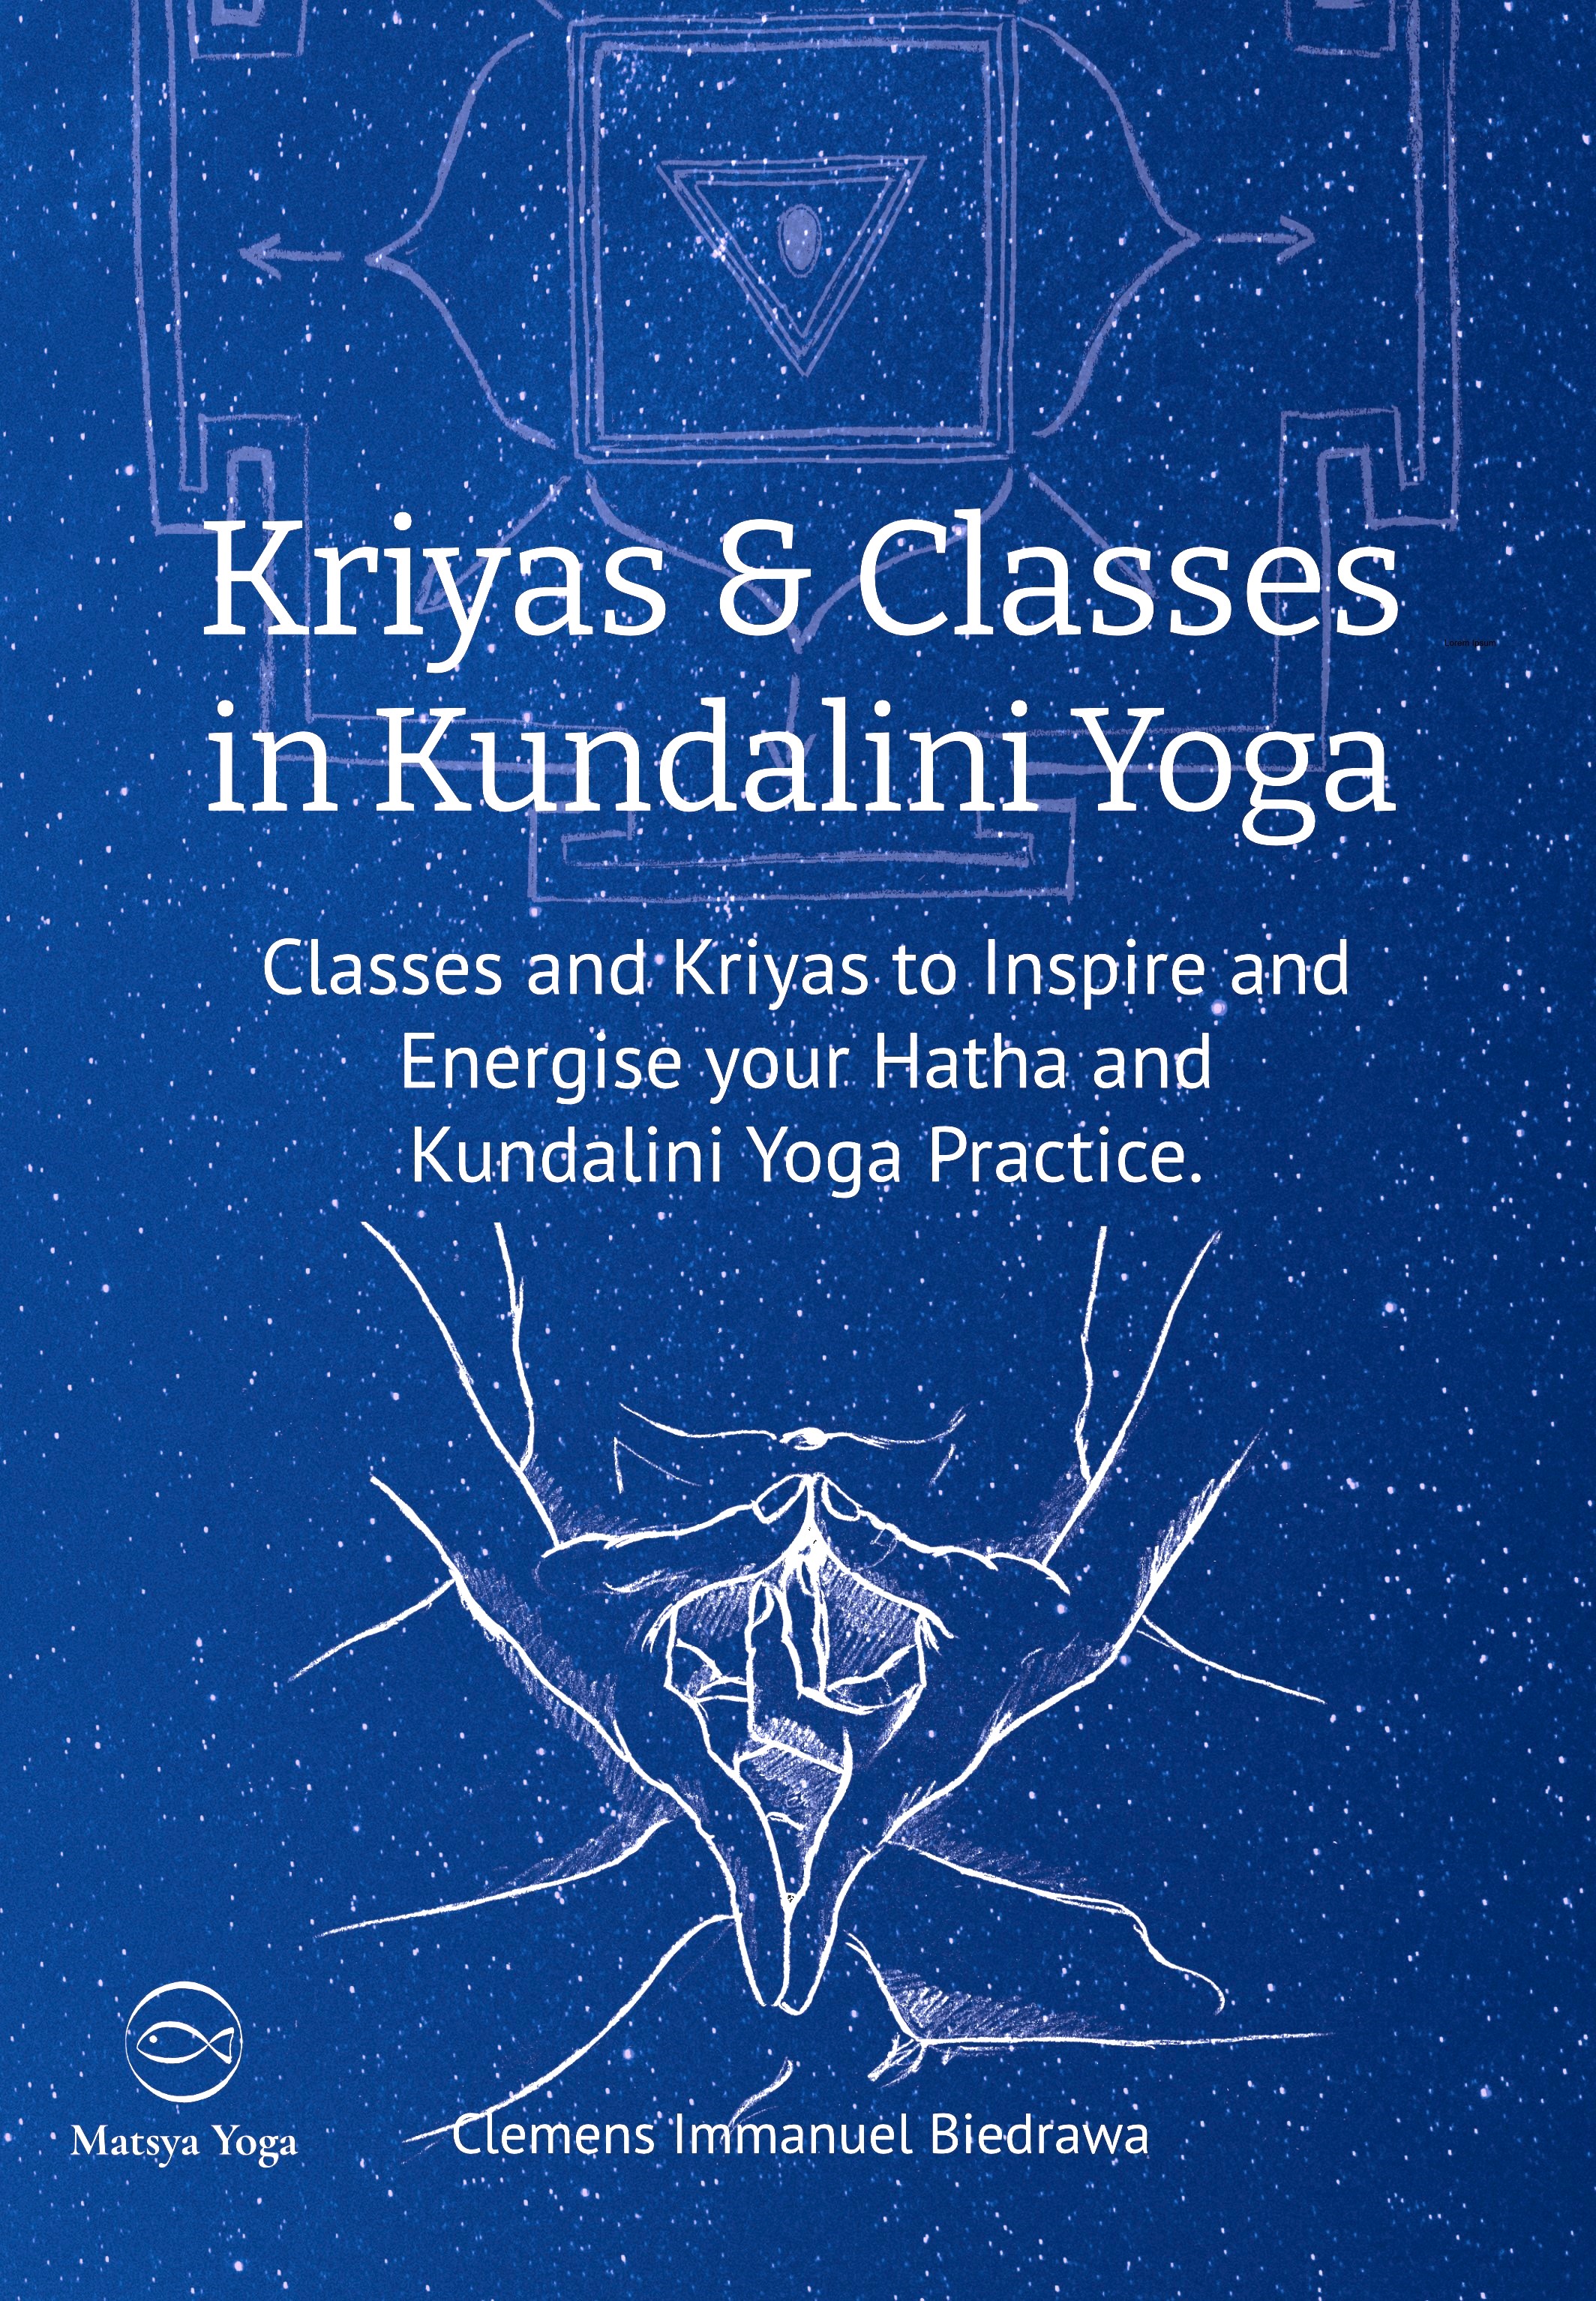 Kriyas and classes in Kundalini Yoga